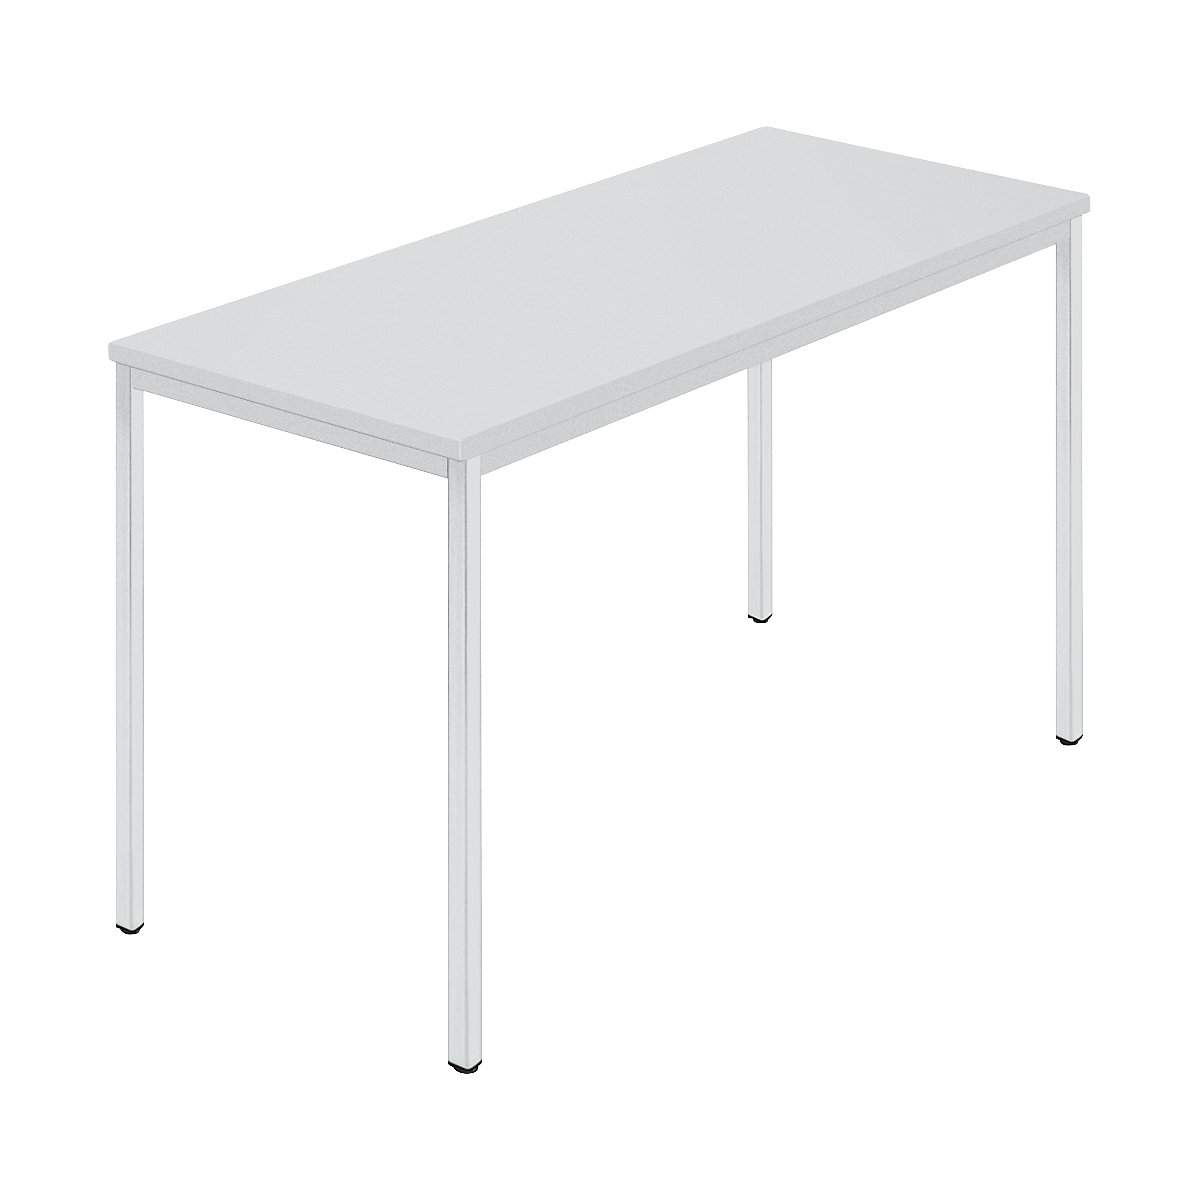 Rechthoekige tafel, vierkante buis met coating, b x d = 1200 x 600 mm, grijs / grijs-7